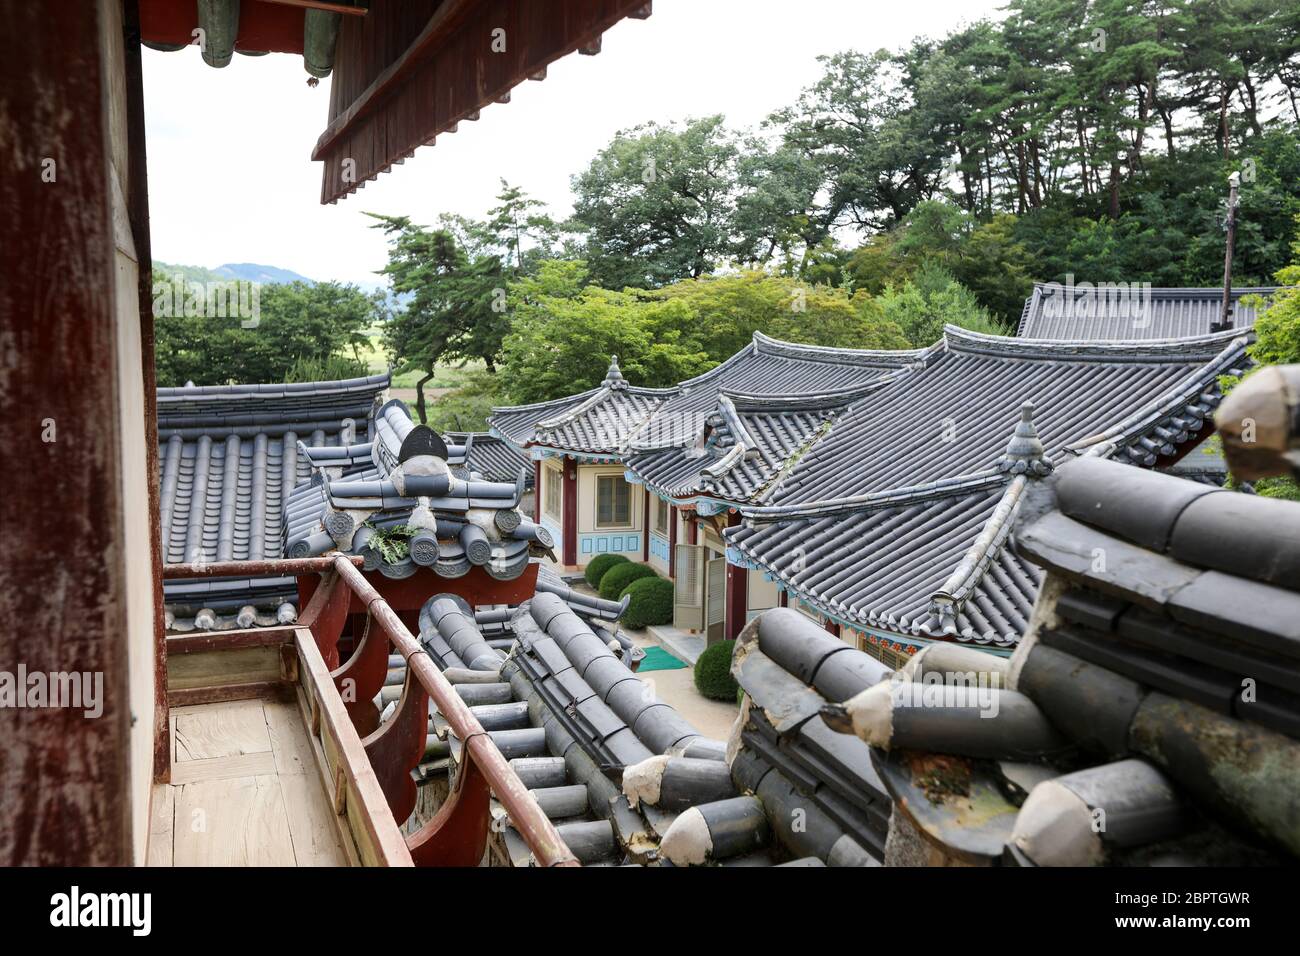 Hermosas casas y tejados tradicionales coreanos. Foto de stock